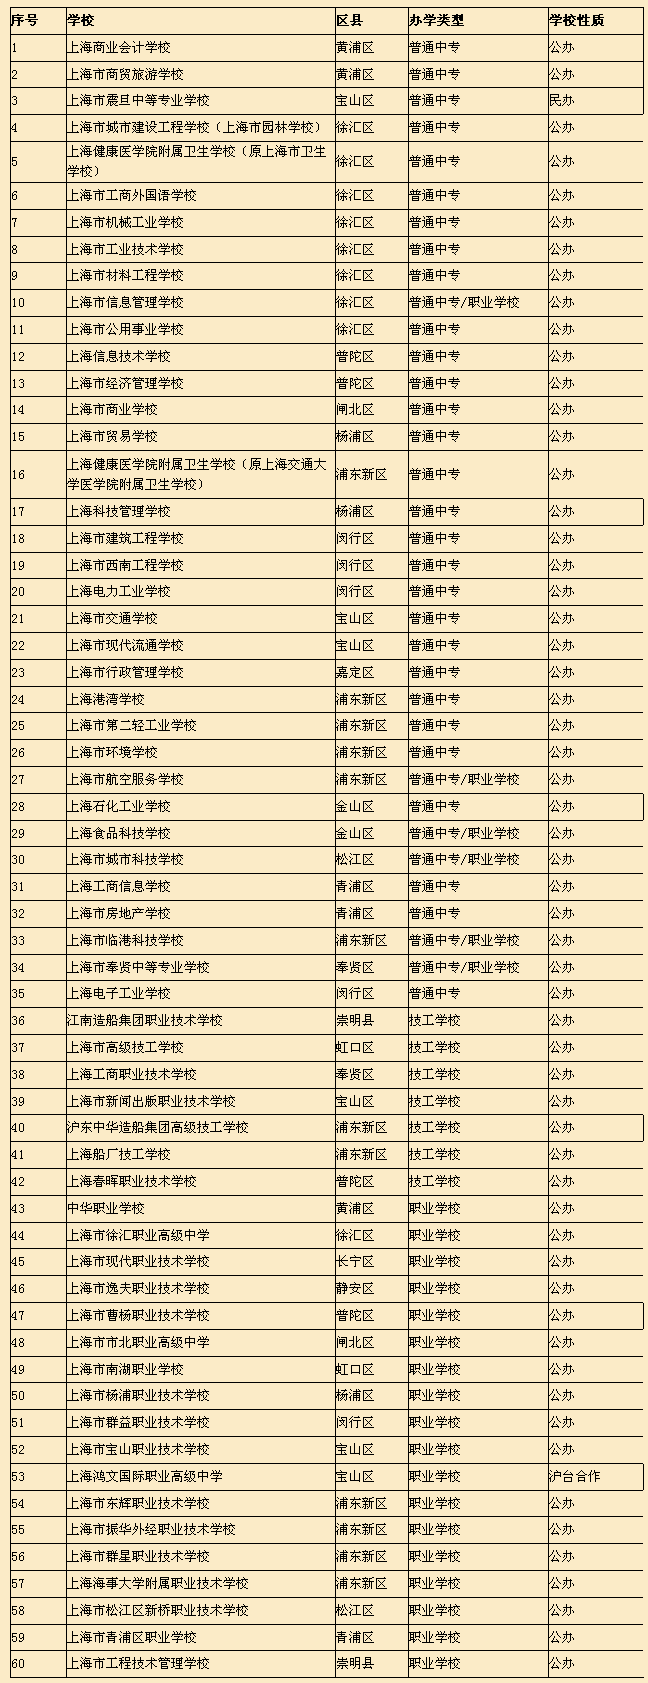 2015年上海市中职学校随迁子女招生缺额学校